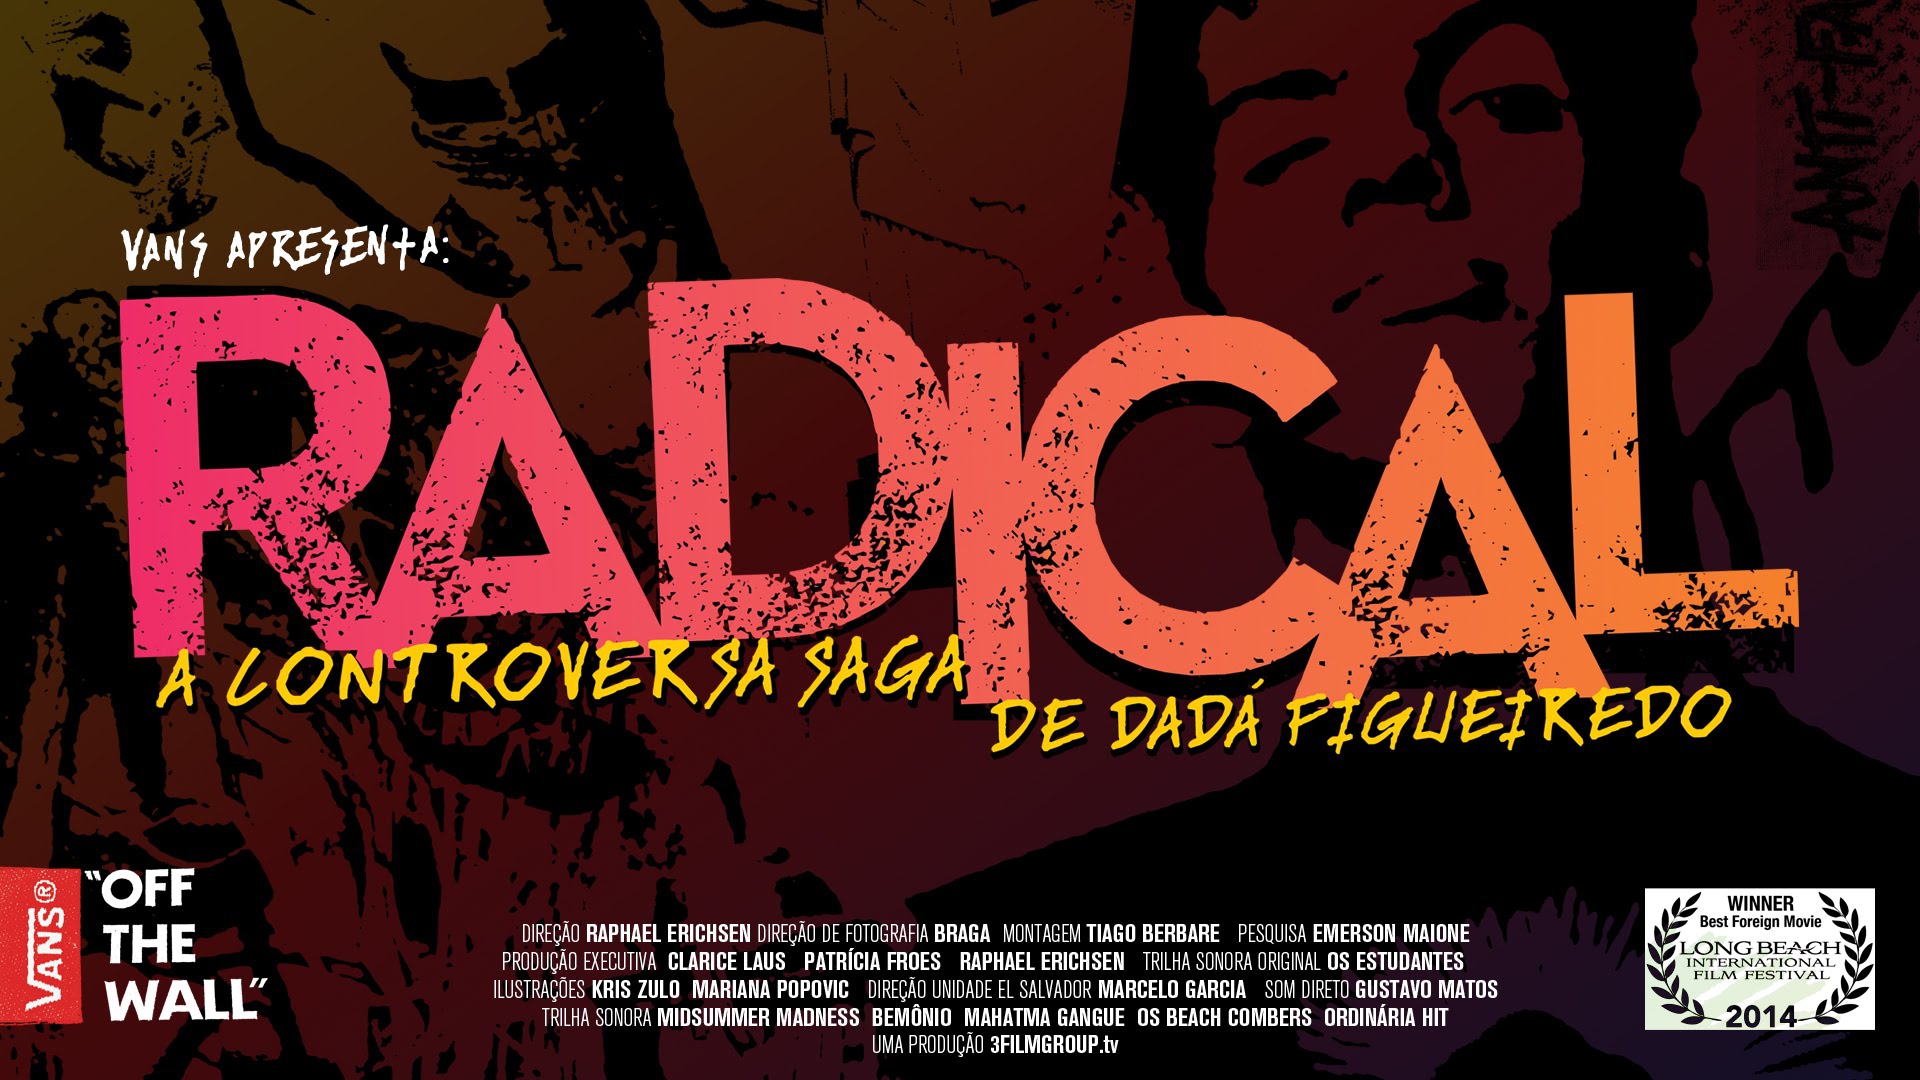  Radical - A Controversa Saga de Dadá Figueiredo (2014) Poster 